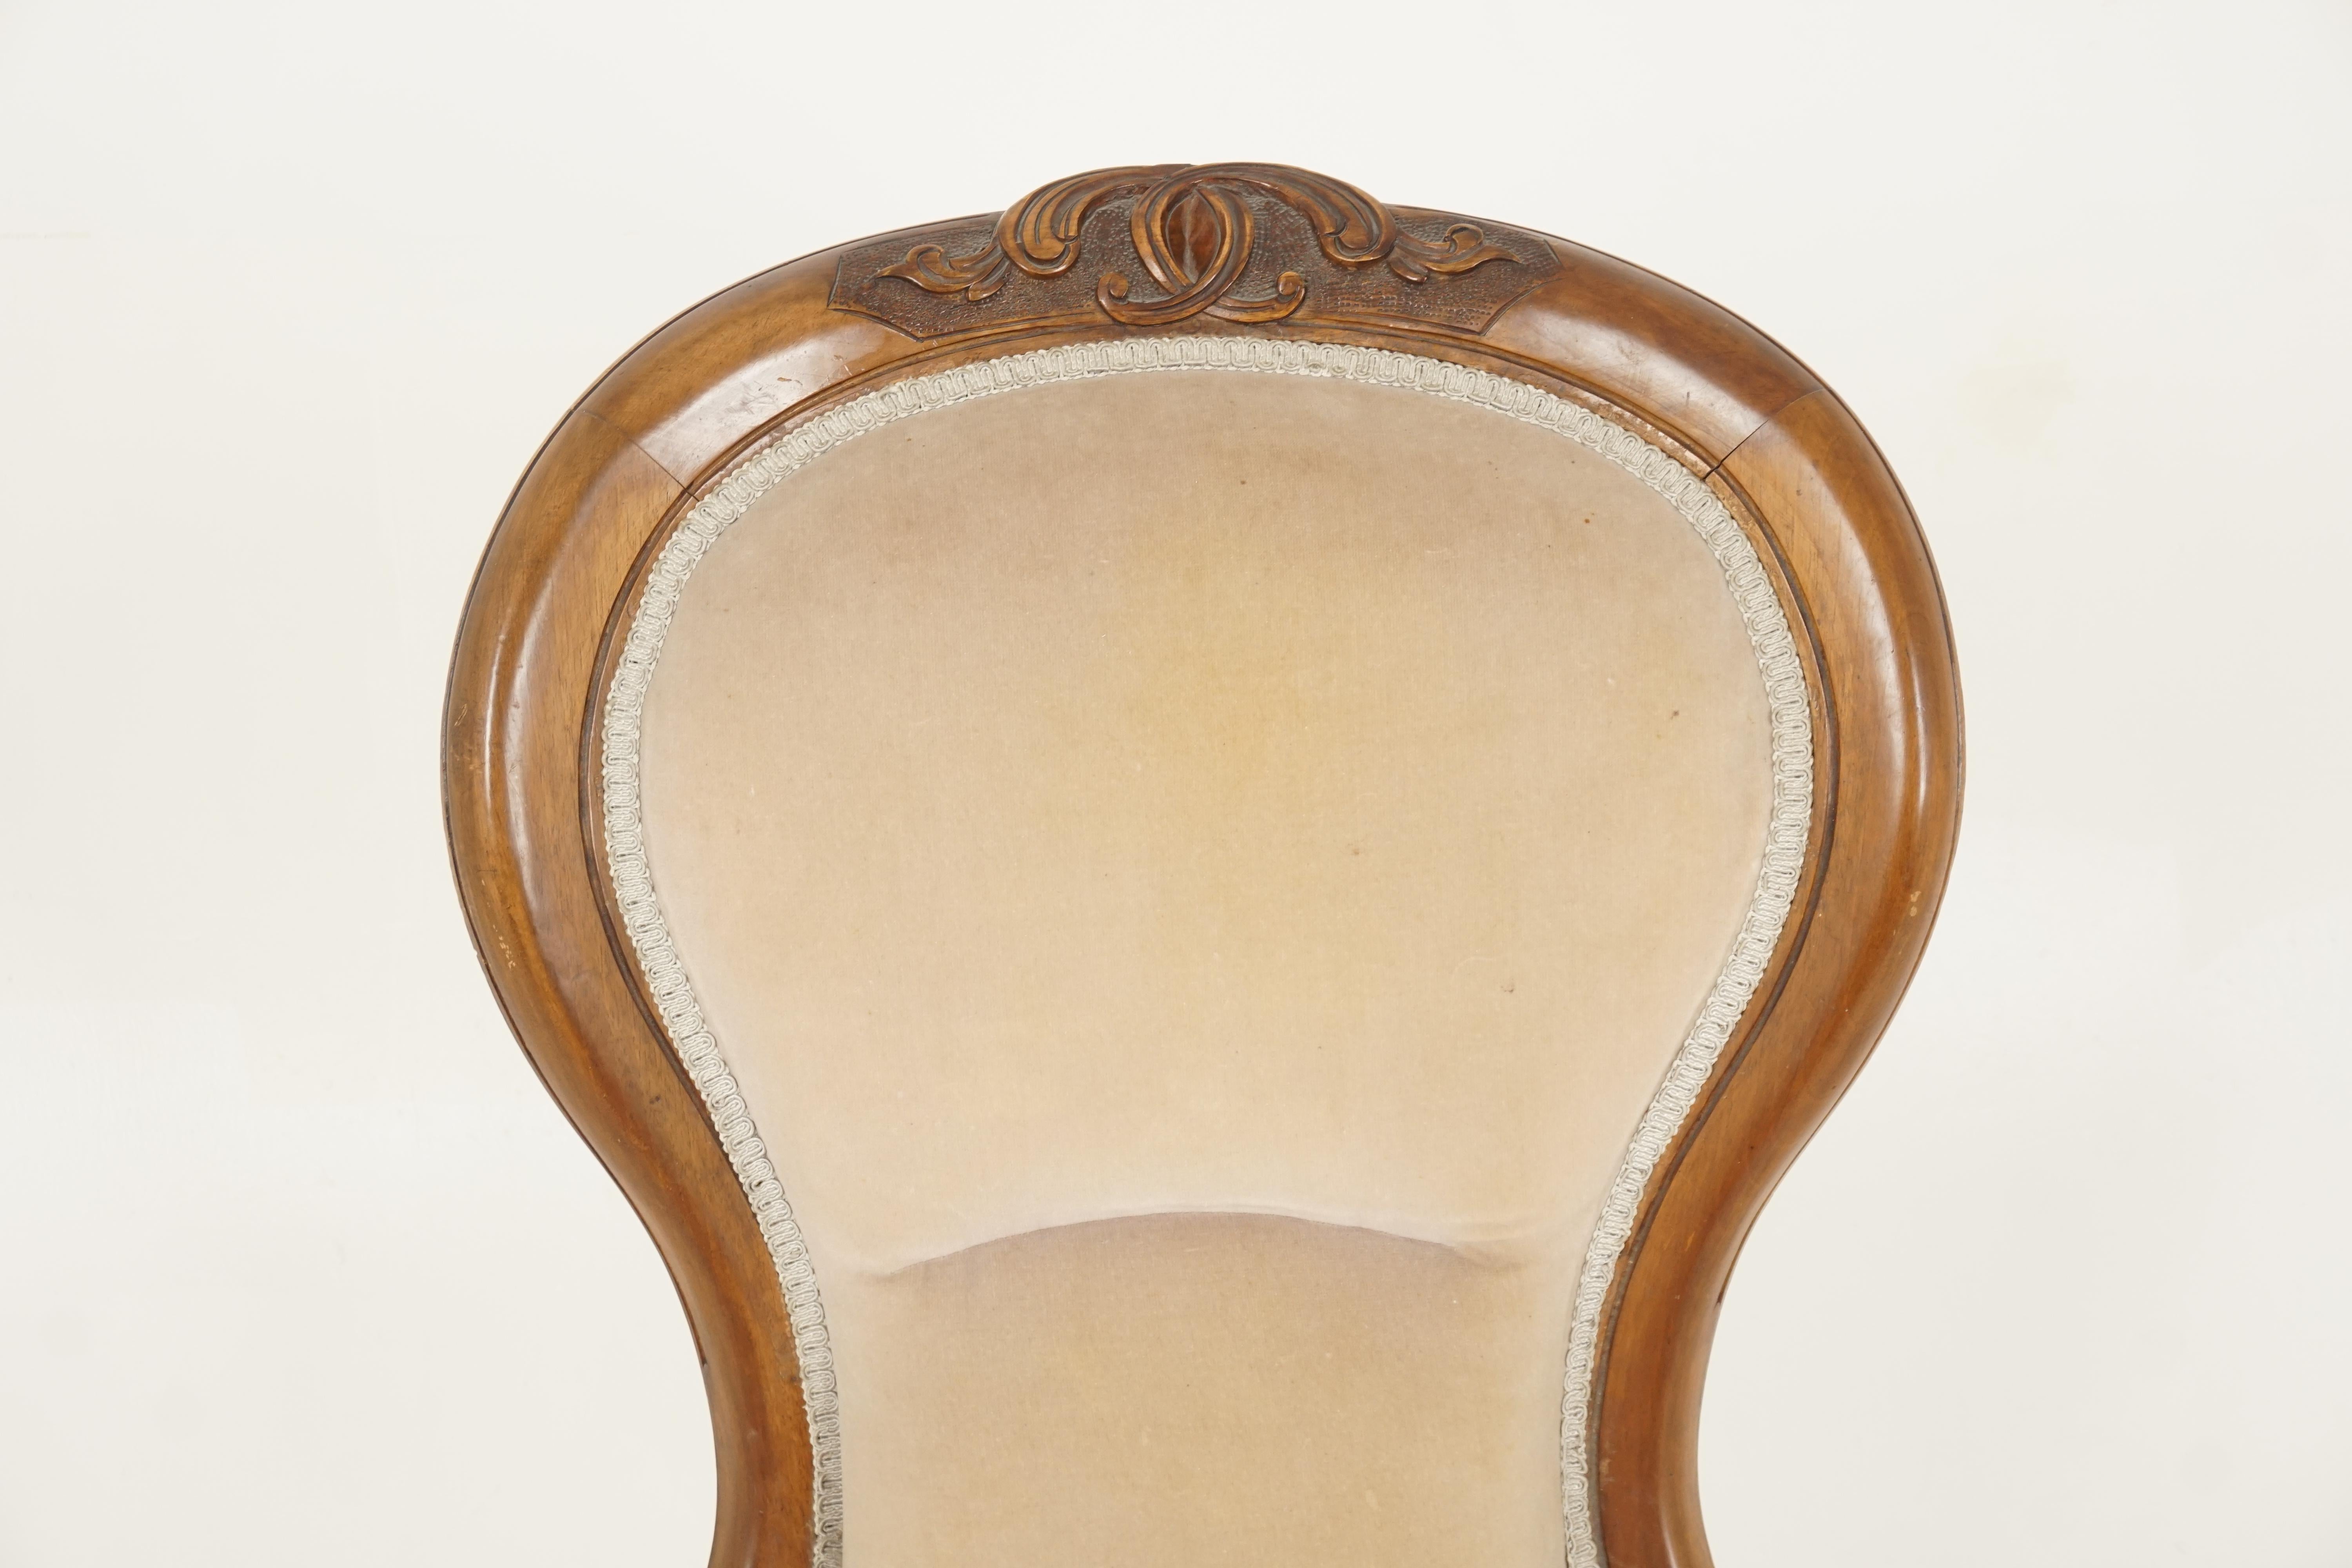 Scottish Antique Victorian Chair, Walnut, Women's Parlour Chair, Scotland 1870, H283